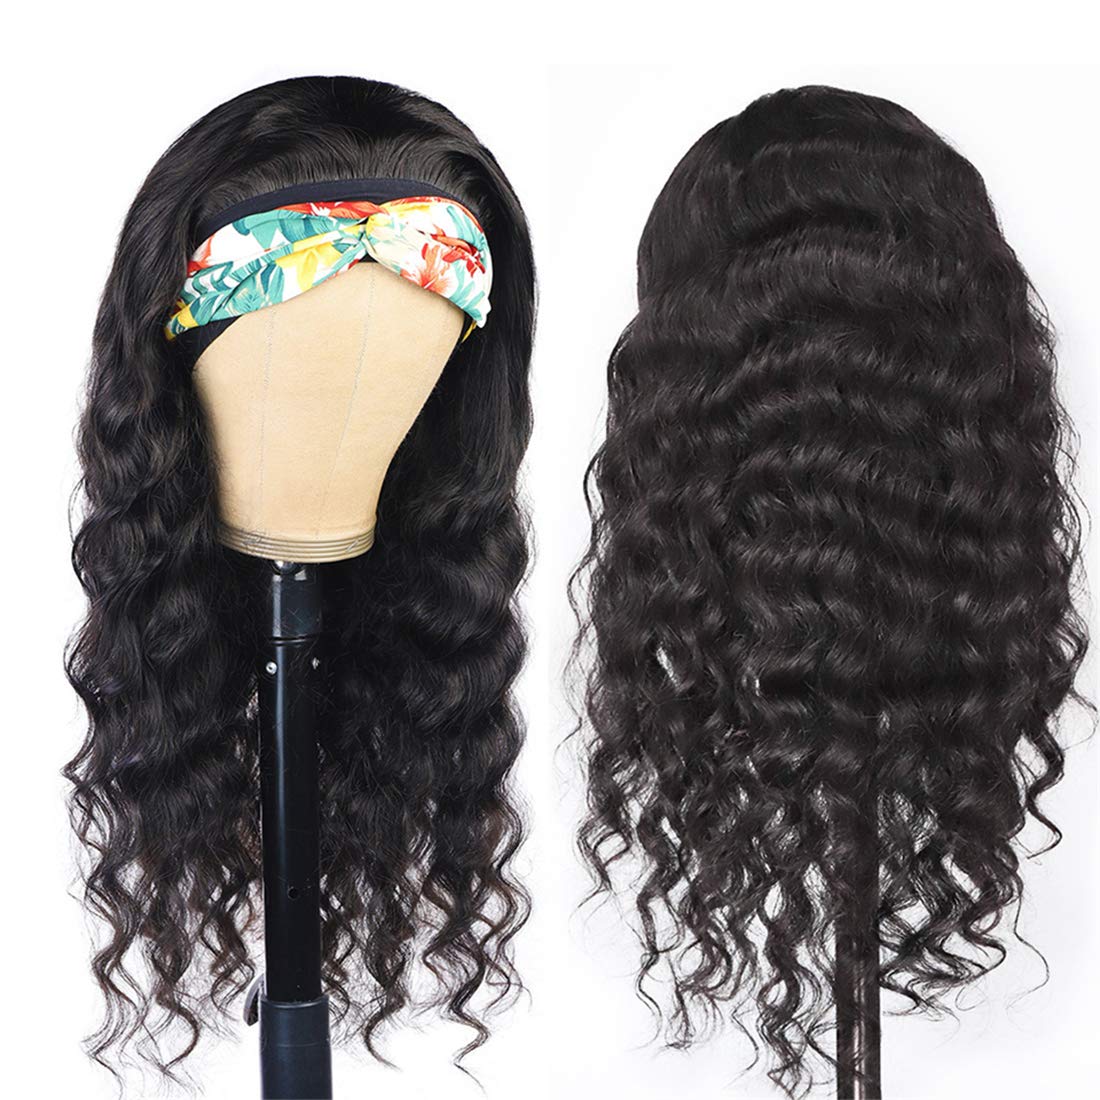 Gluna Hair Loose Deep Wave Headband Wig Virgin Human Hair Wigs For Black Women